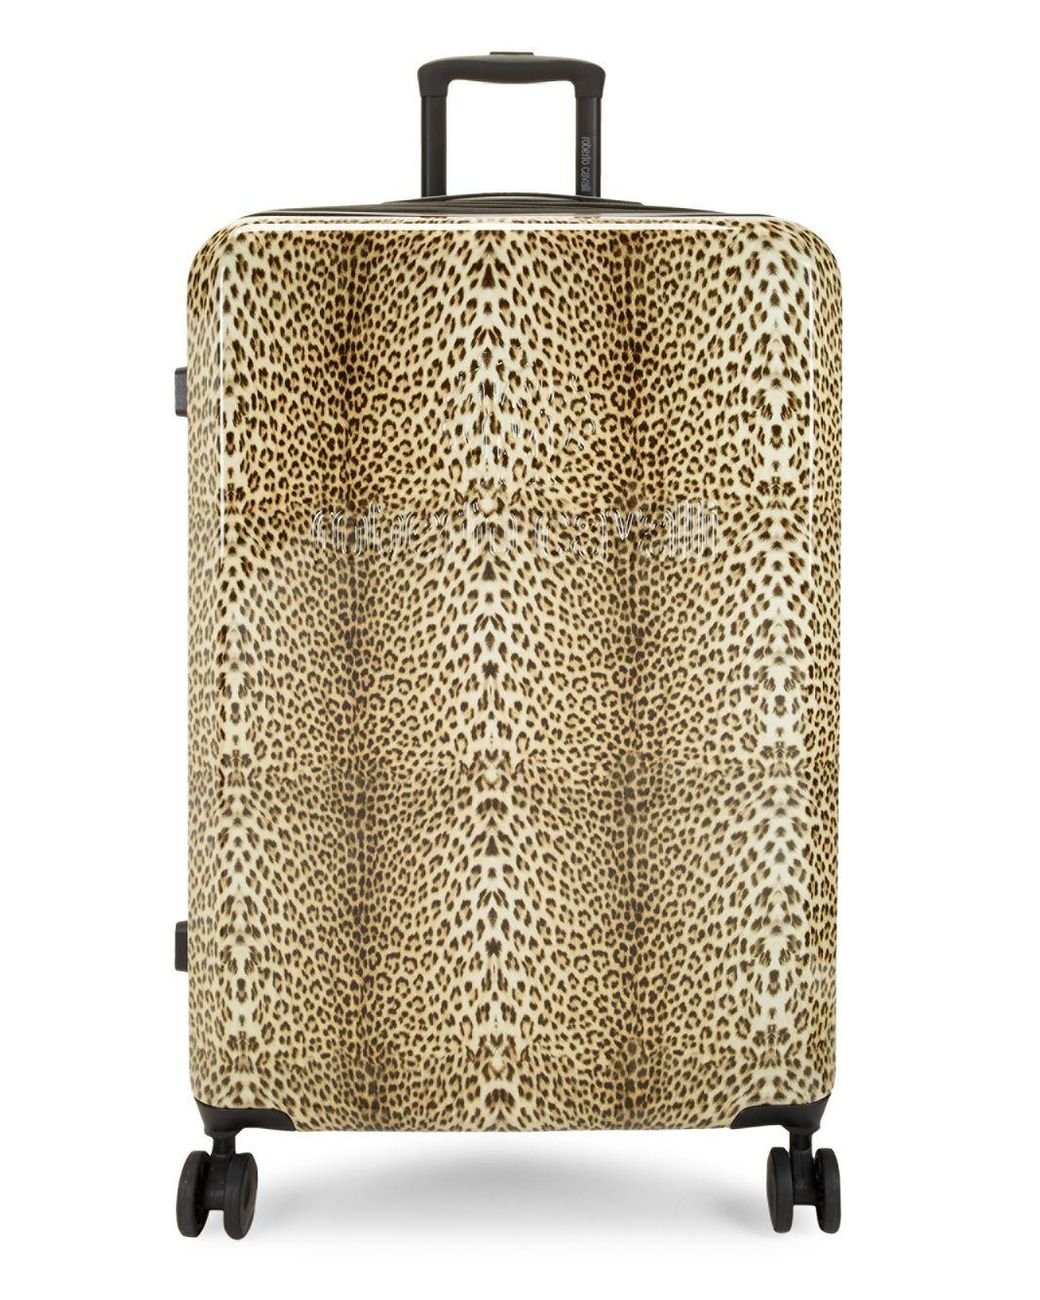 Dolce & Gabbana leopard-print Trunk AirPods Case - Farfetch